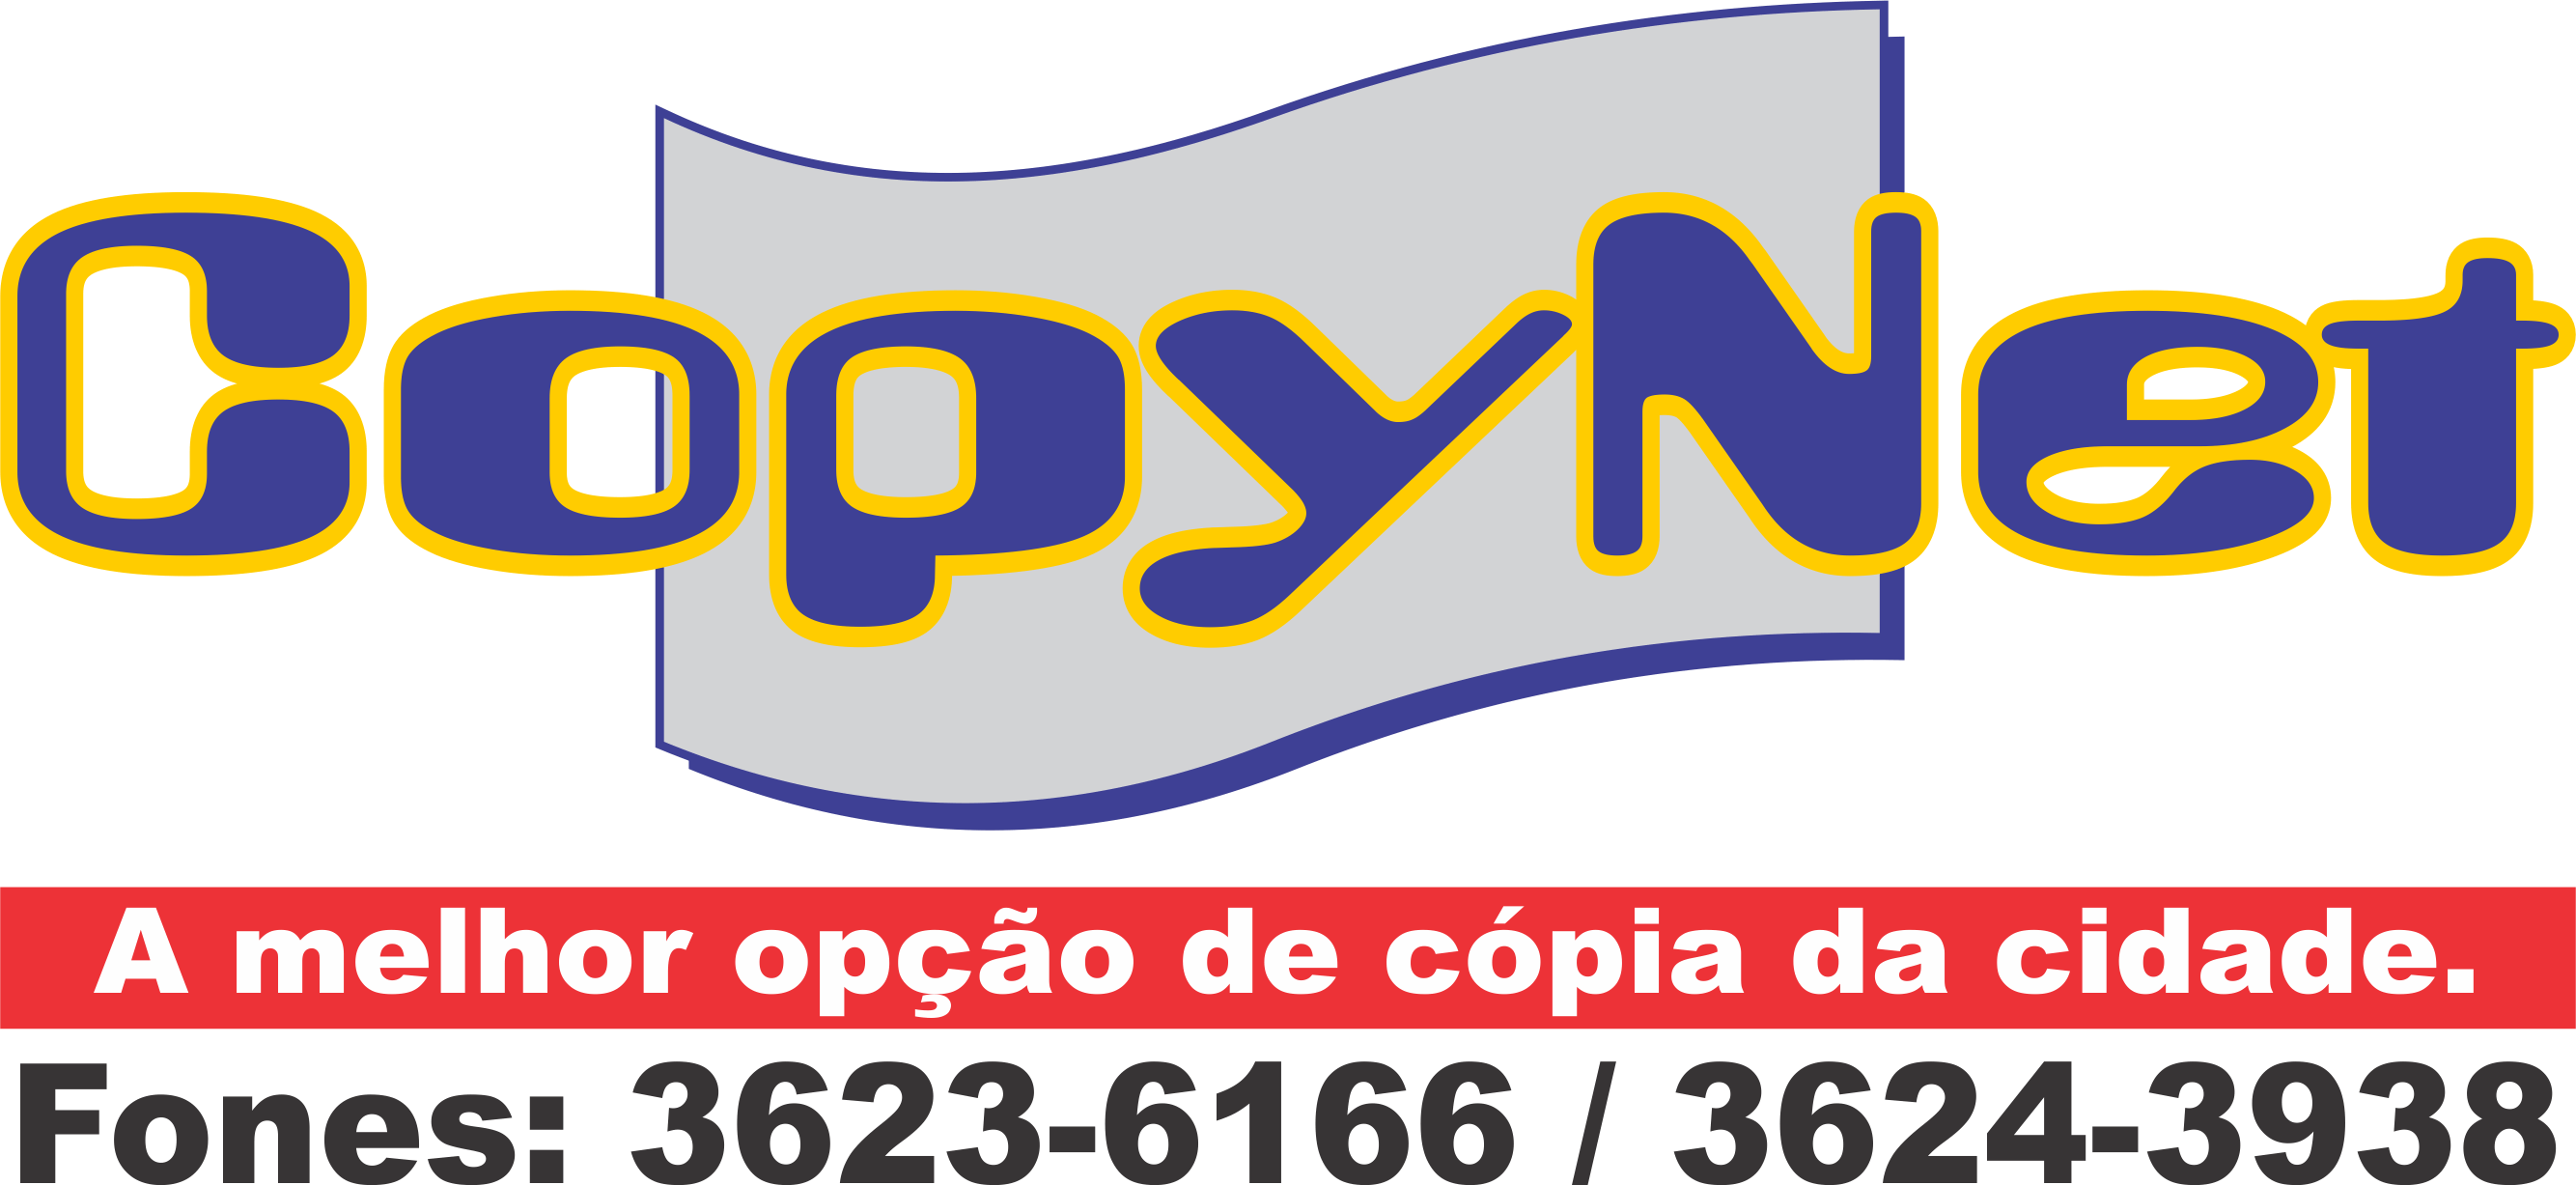 COPYNET - Papelarias - Boa Vista, RR